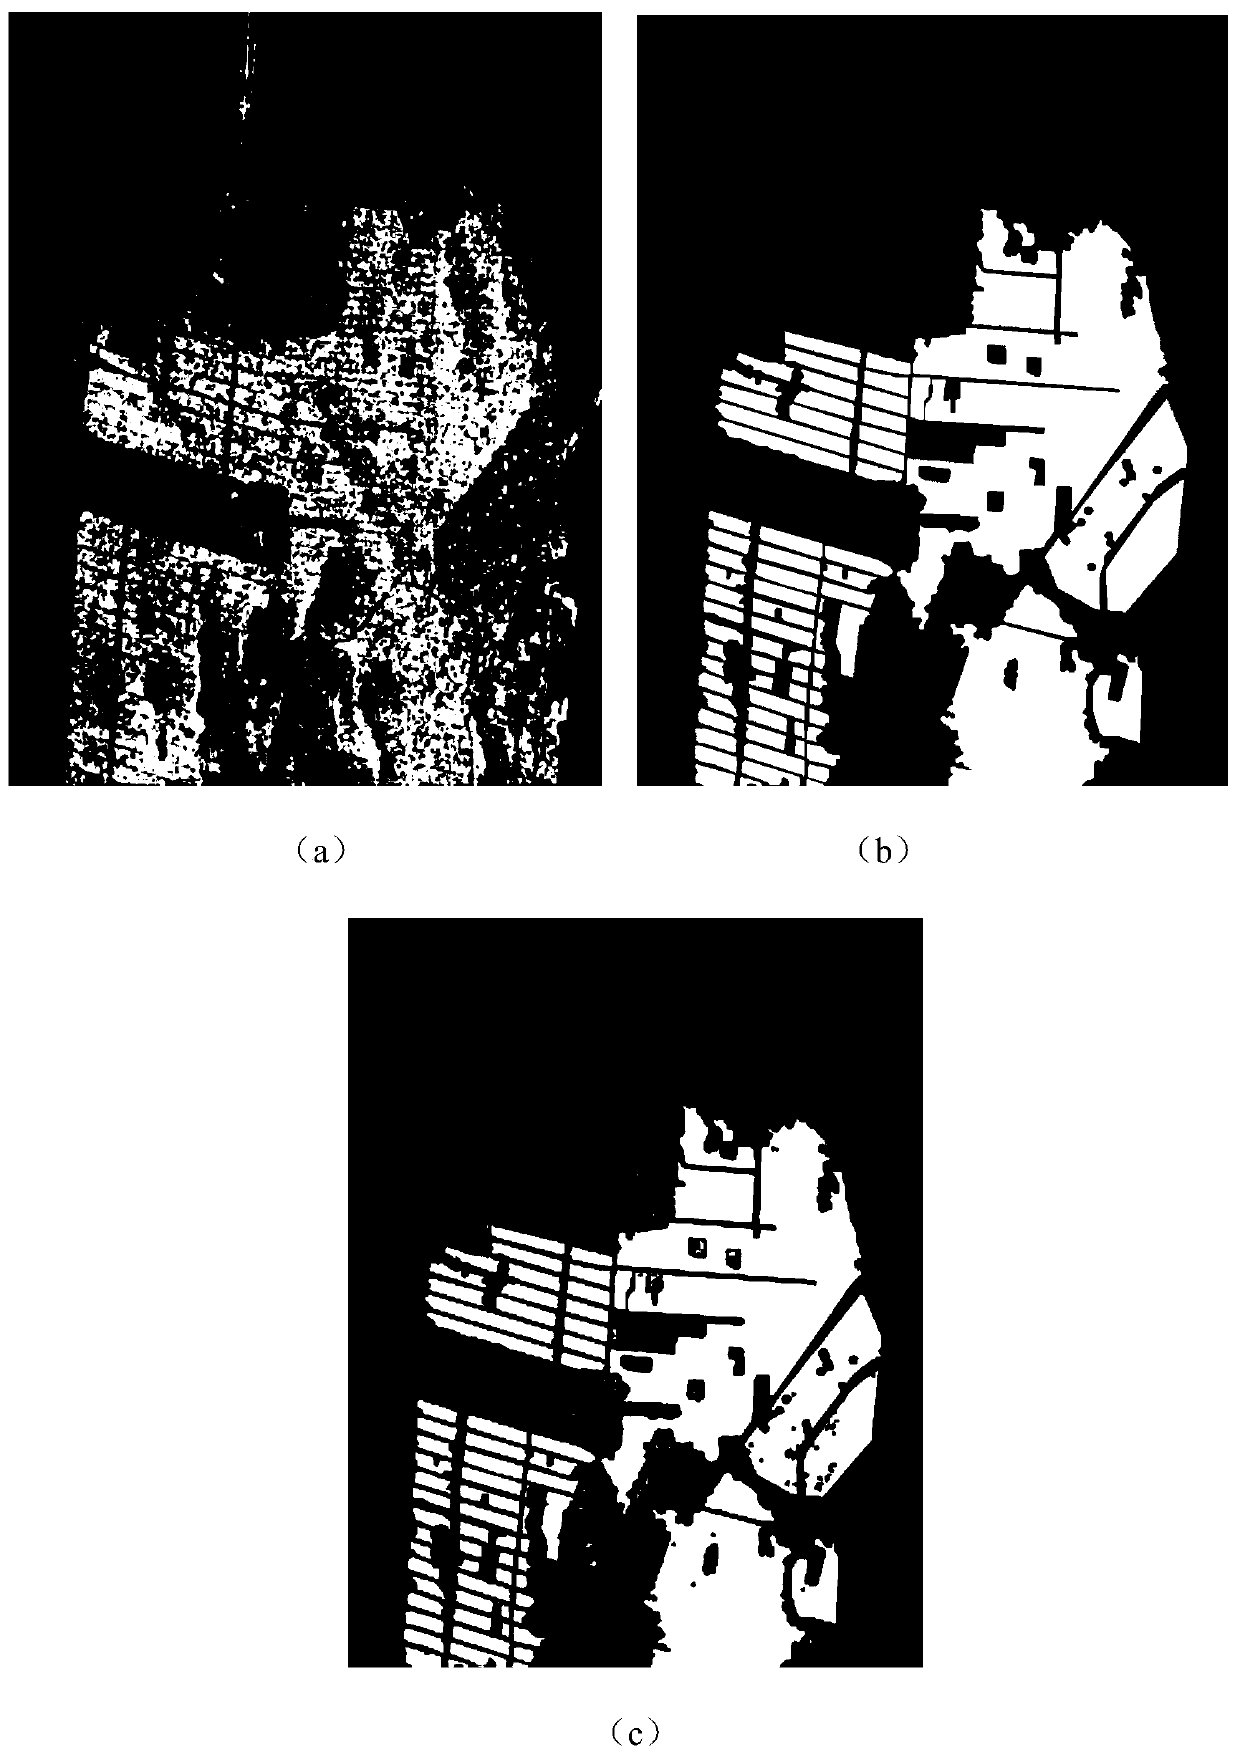 Target detection method in polarized sar image based on nsct ladder net model